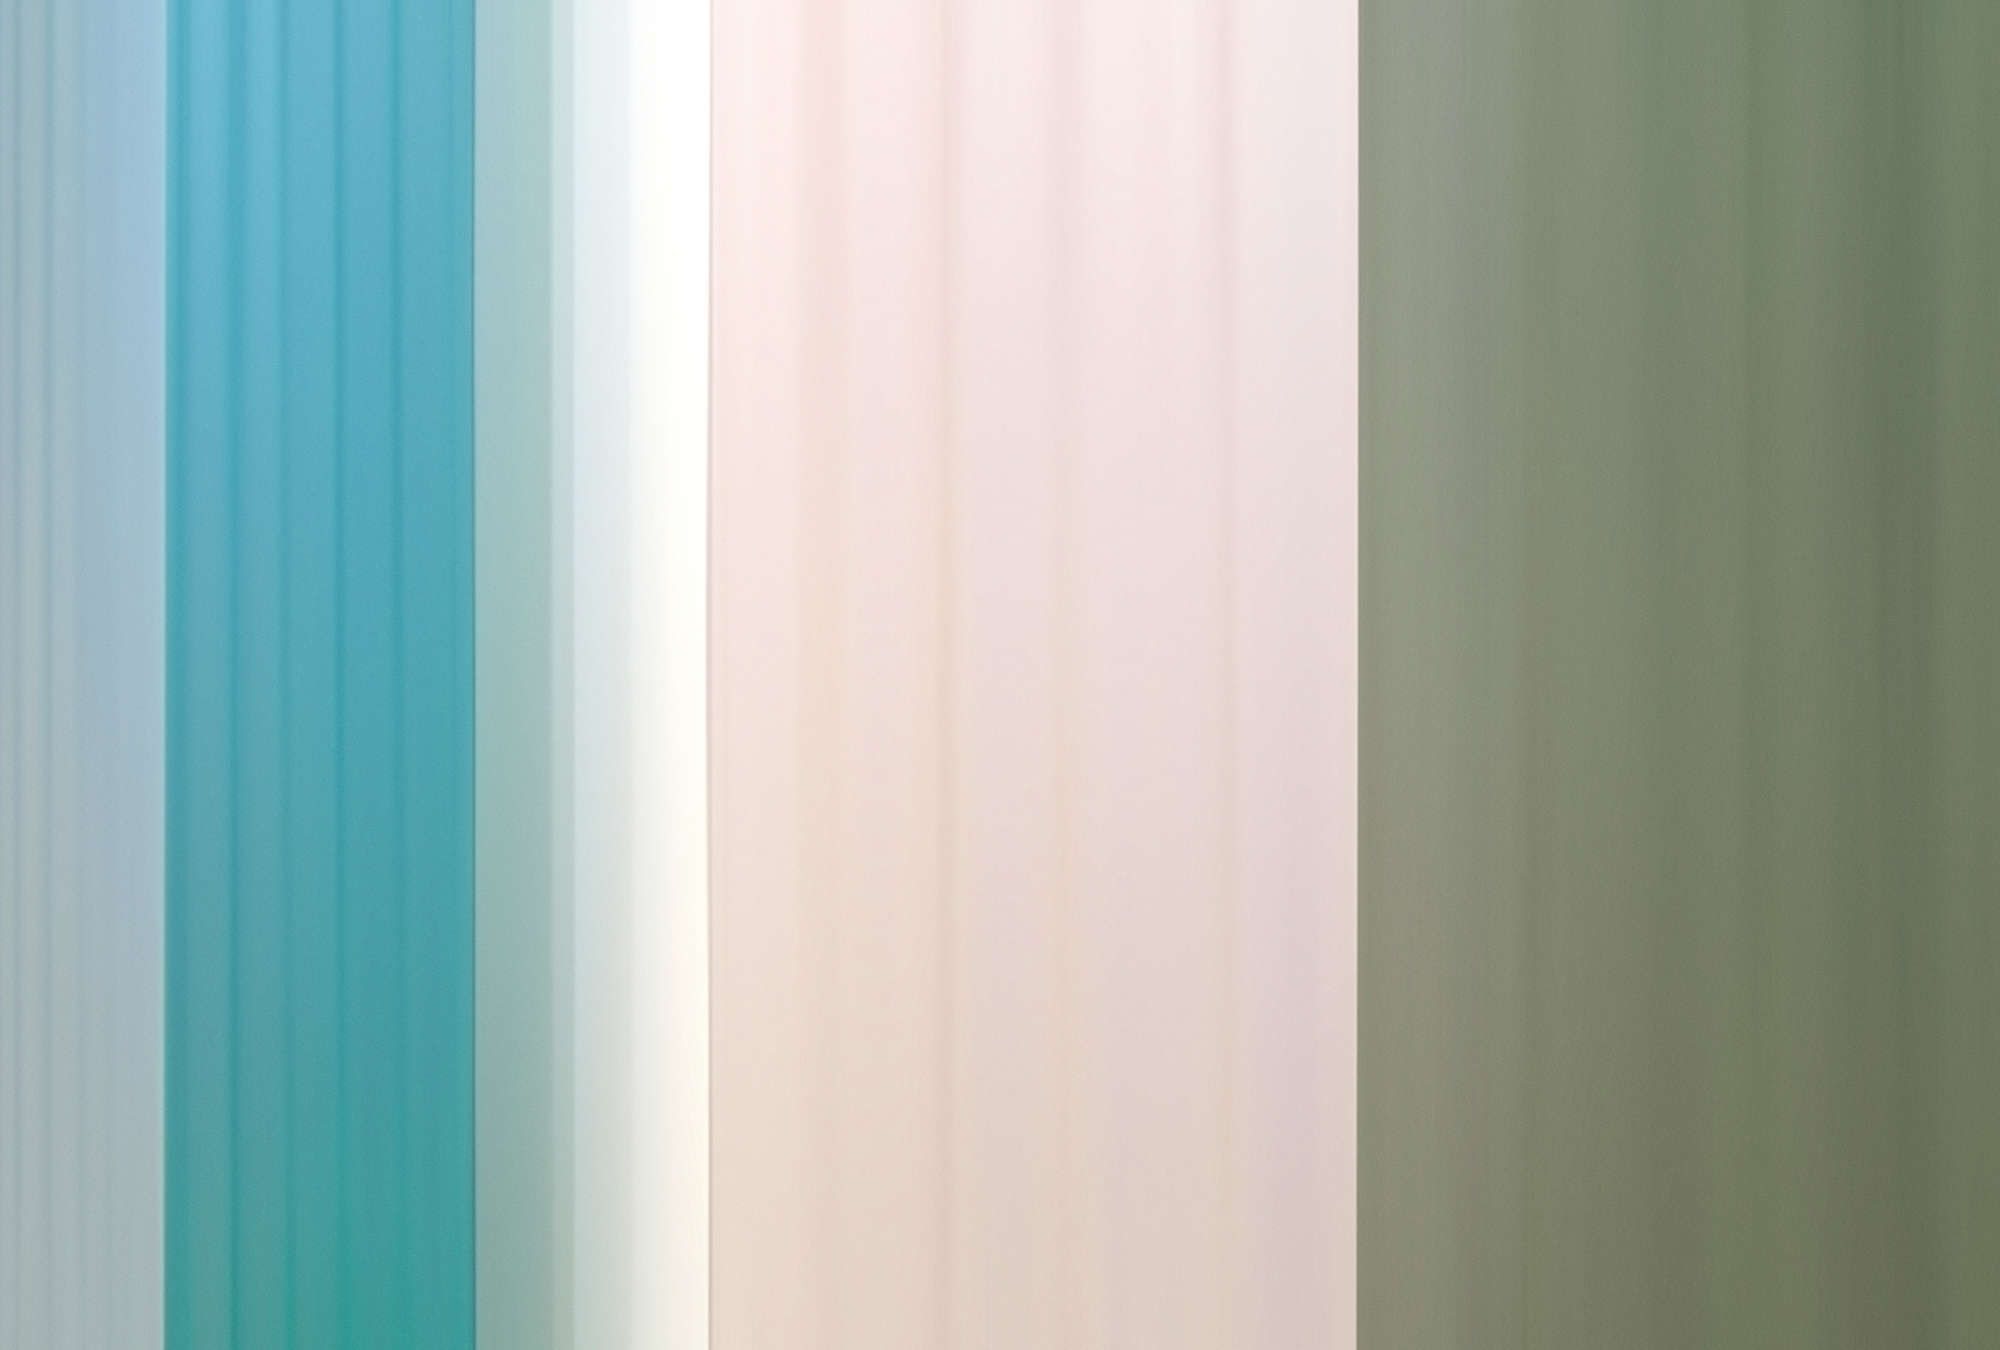             papier peint en papier panoramique »co-colores 4« - dégradé de couleurs à rayures - turquoise, crème, vert | intissé légèrement structuré
        